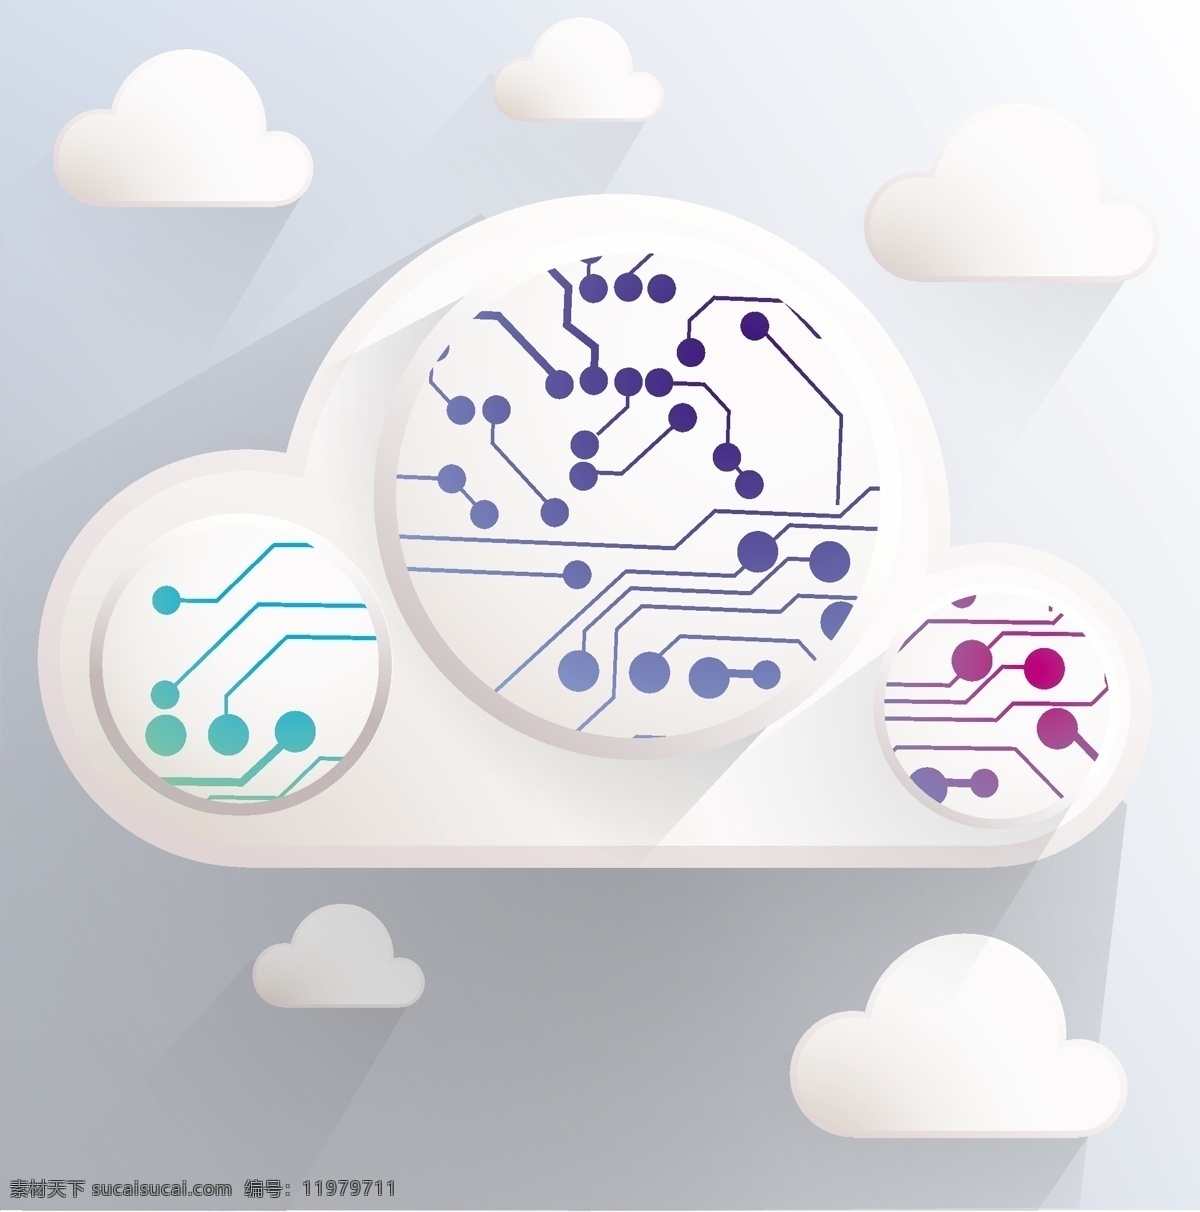 立体 云 服务 图标 云服务 云计算图标 云系统 网络科技 信息科技 云朵 生活百科 矢量素材 白色